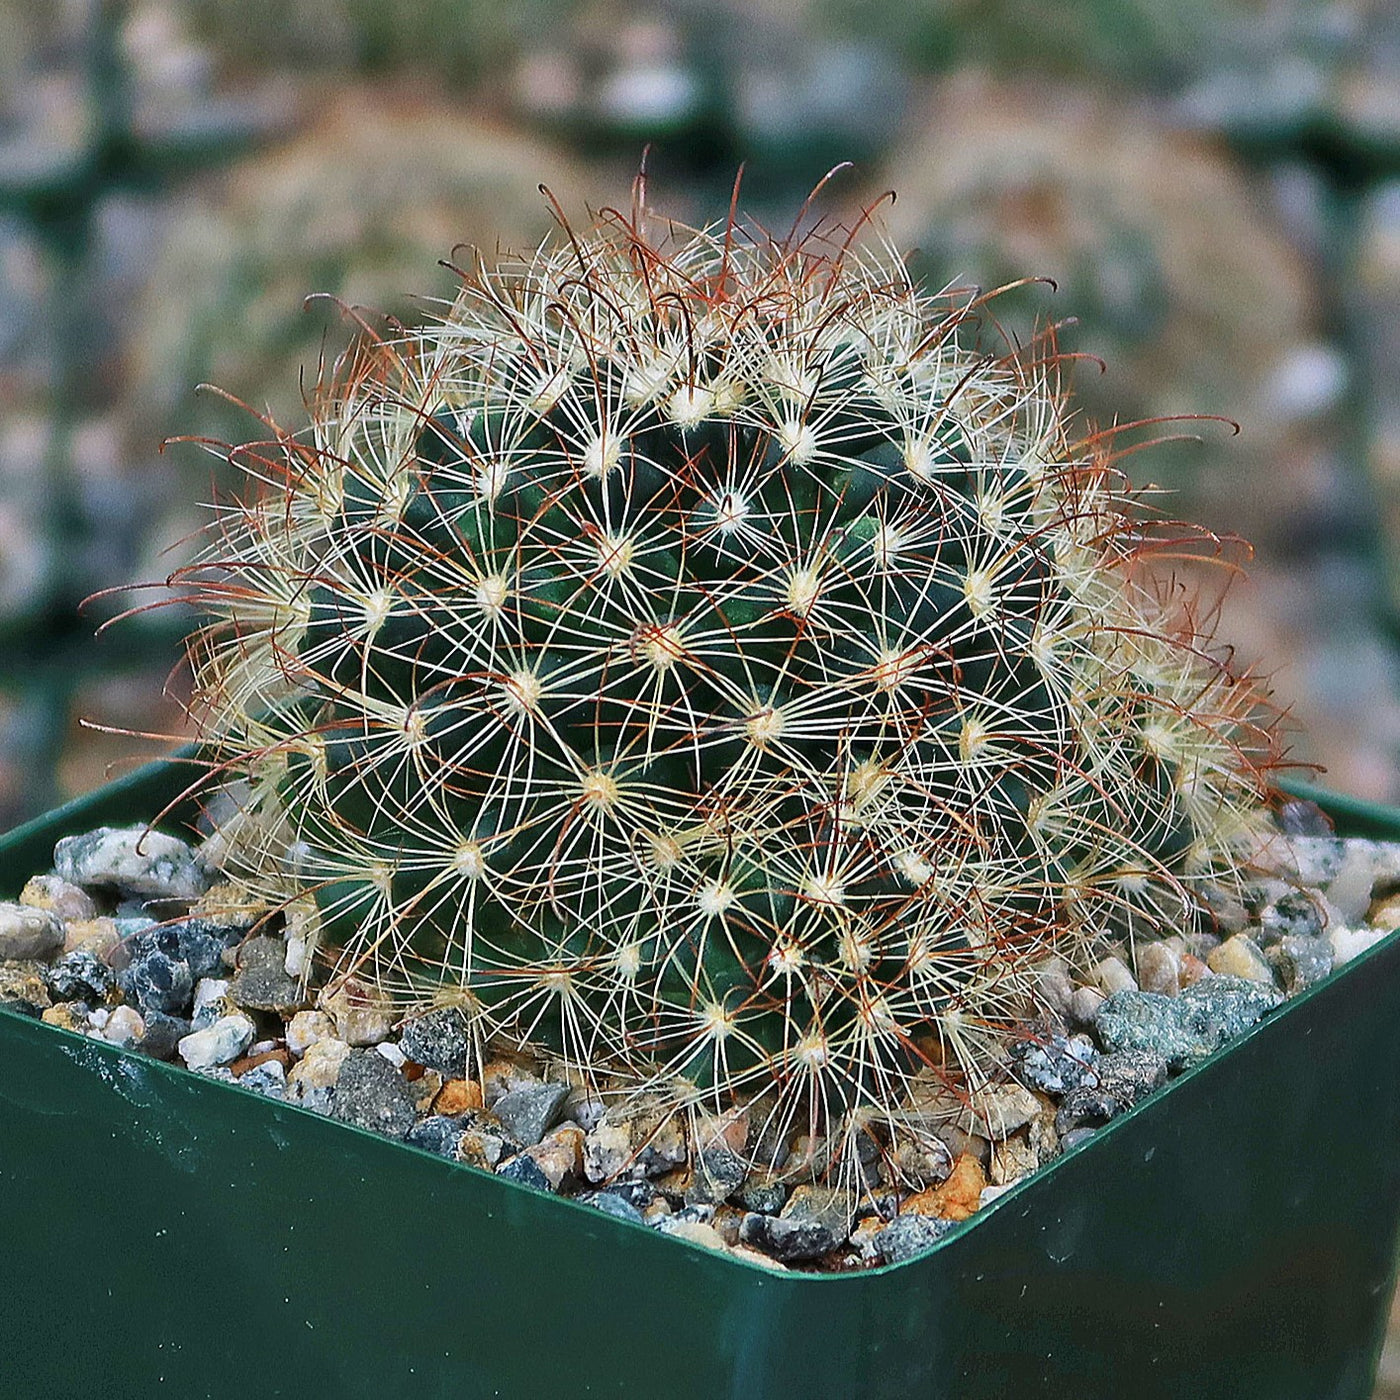 Fishhook Cactus - Mammillaria saffordii 'Carretii'